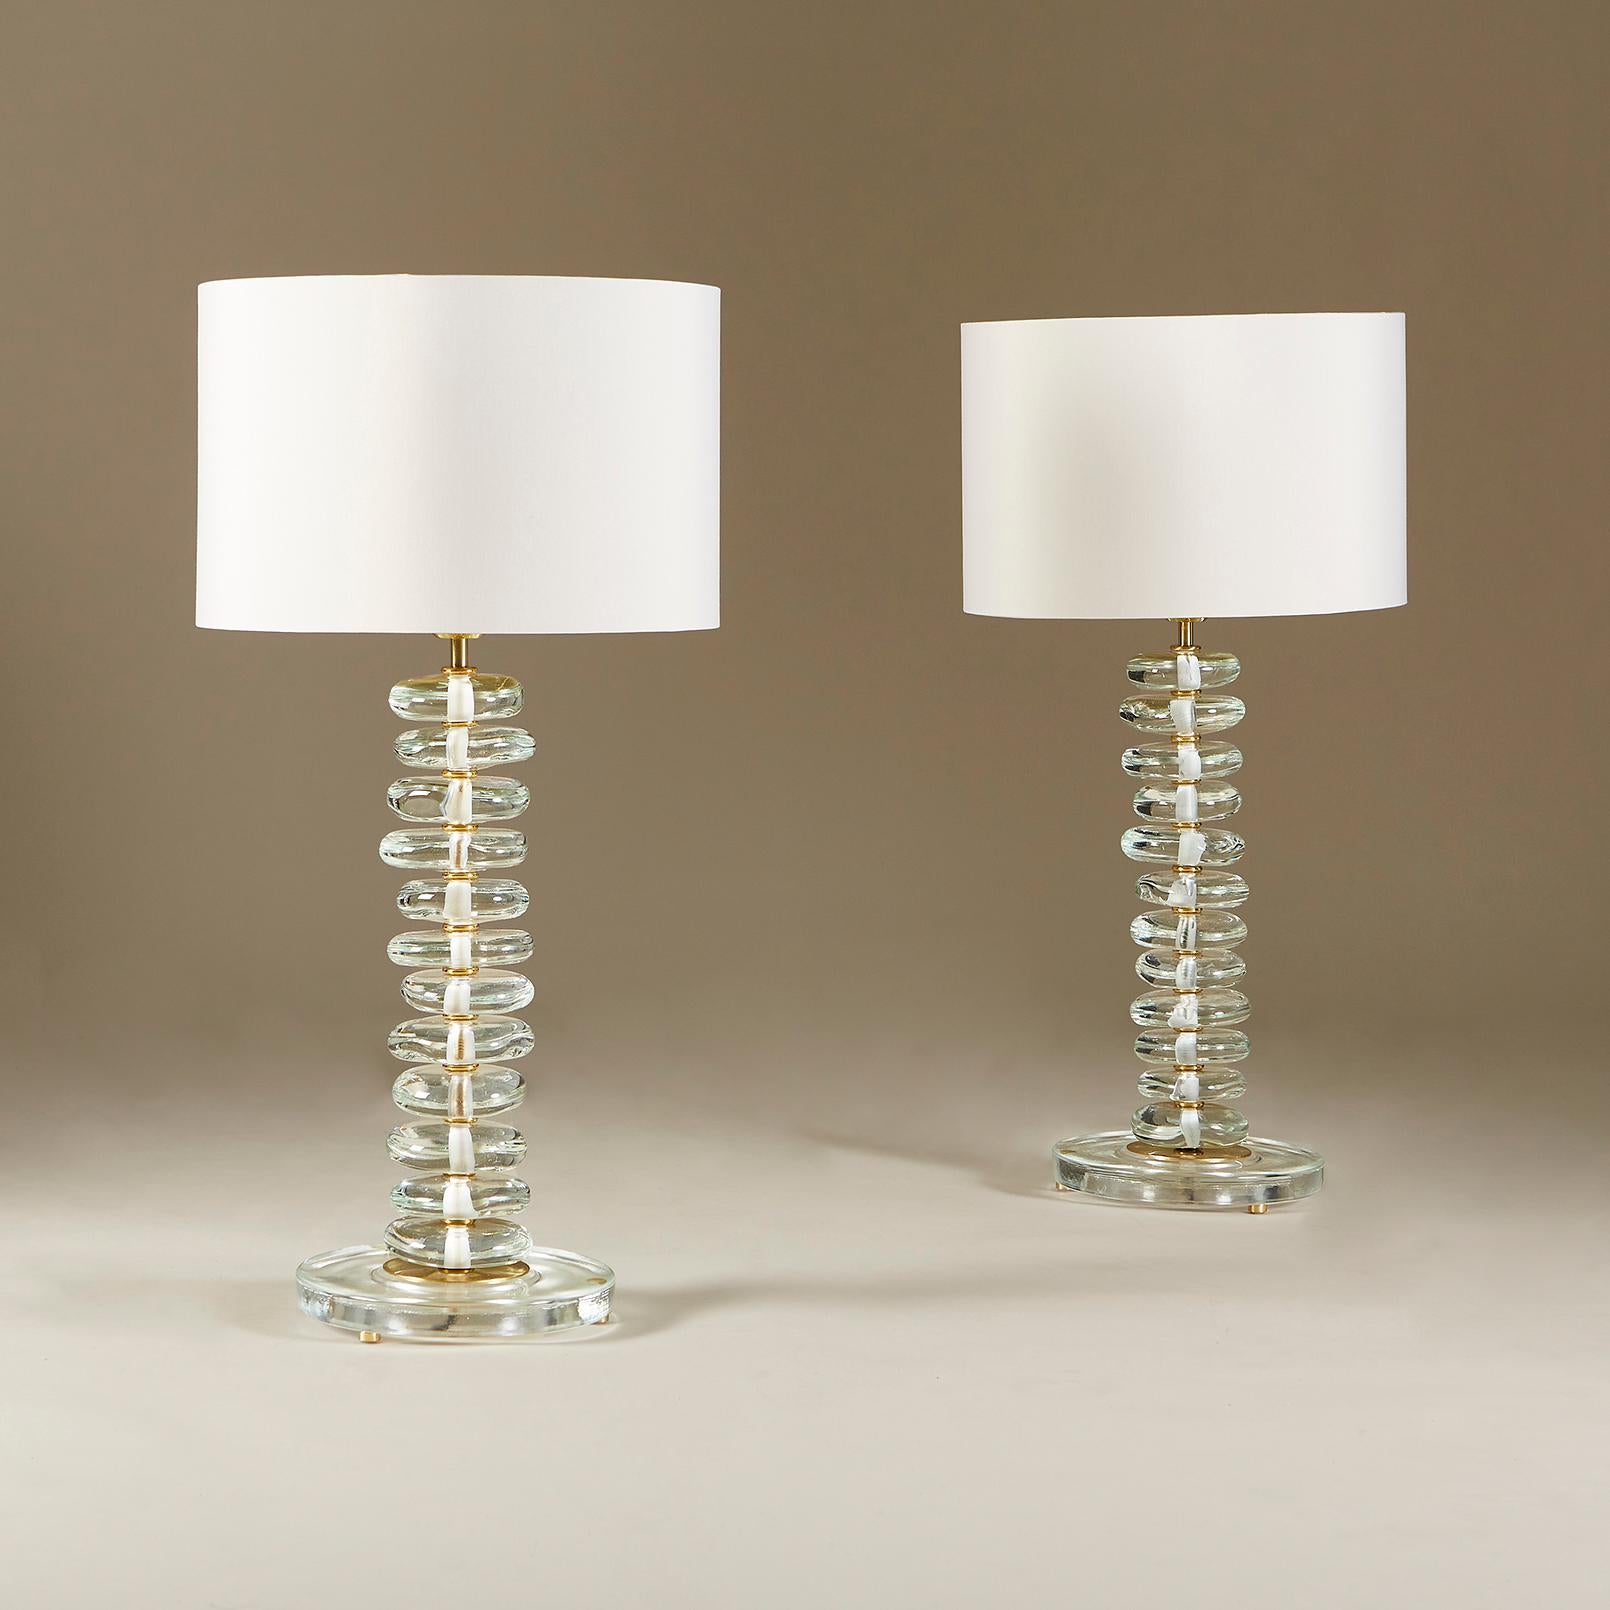 Grandes lampes de table contemporaines composées de piliers de galets de verre de forme individuelle reposant sur des bases circulaires en verre avec des détails en laiton.

Les dimensions ci-dessous sont celles de chaque lampe uniquement.